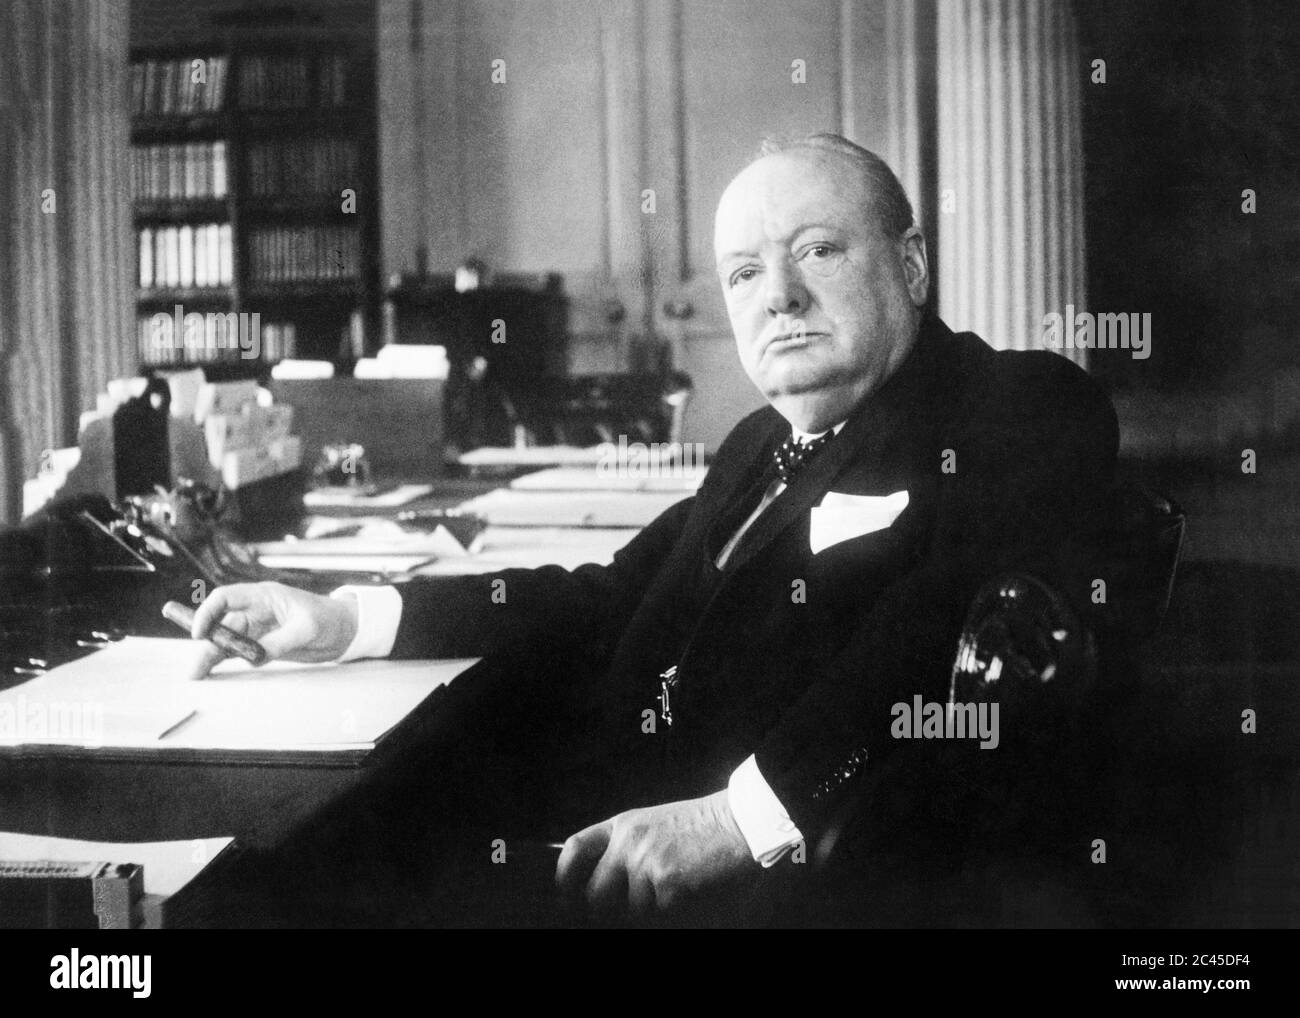 Sir Winston Churchill, grand premier ministre britannique Banque D'Images